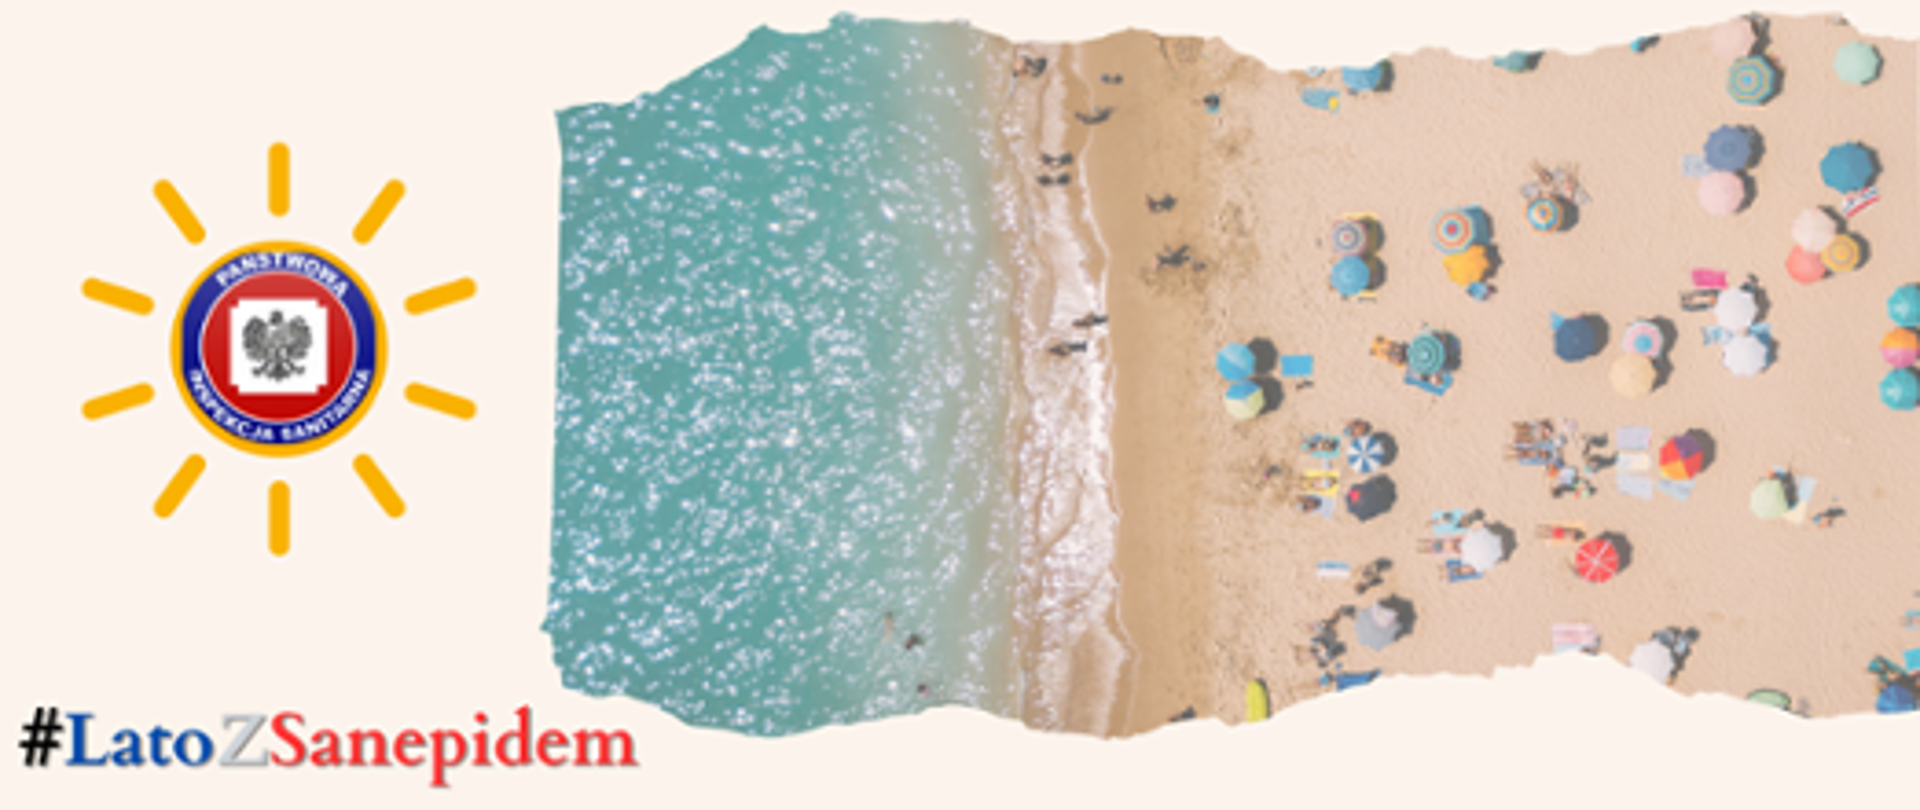 Plakat akcji Lato z sanepidem. na plakacie wycinek plaży z plażowiczami, obok logo Inspekcji Sanitarnej w słoneczku"